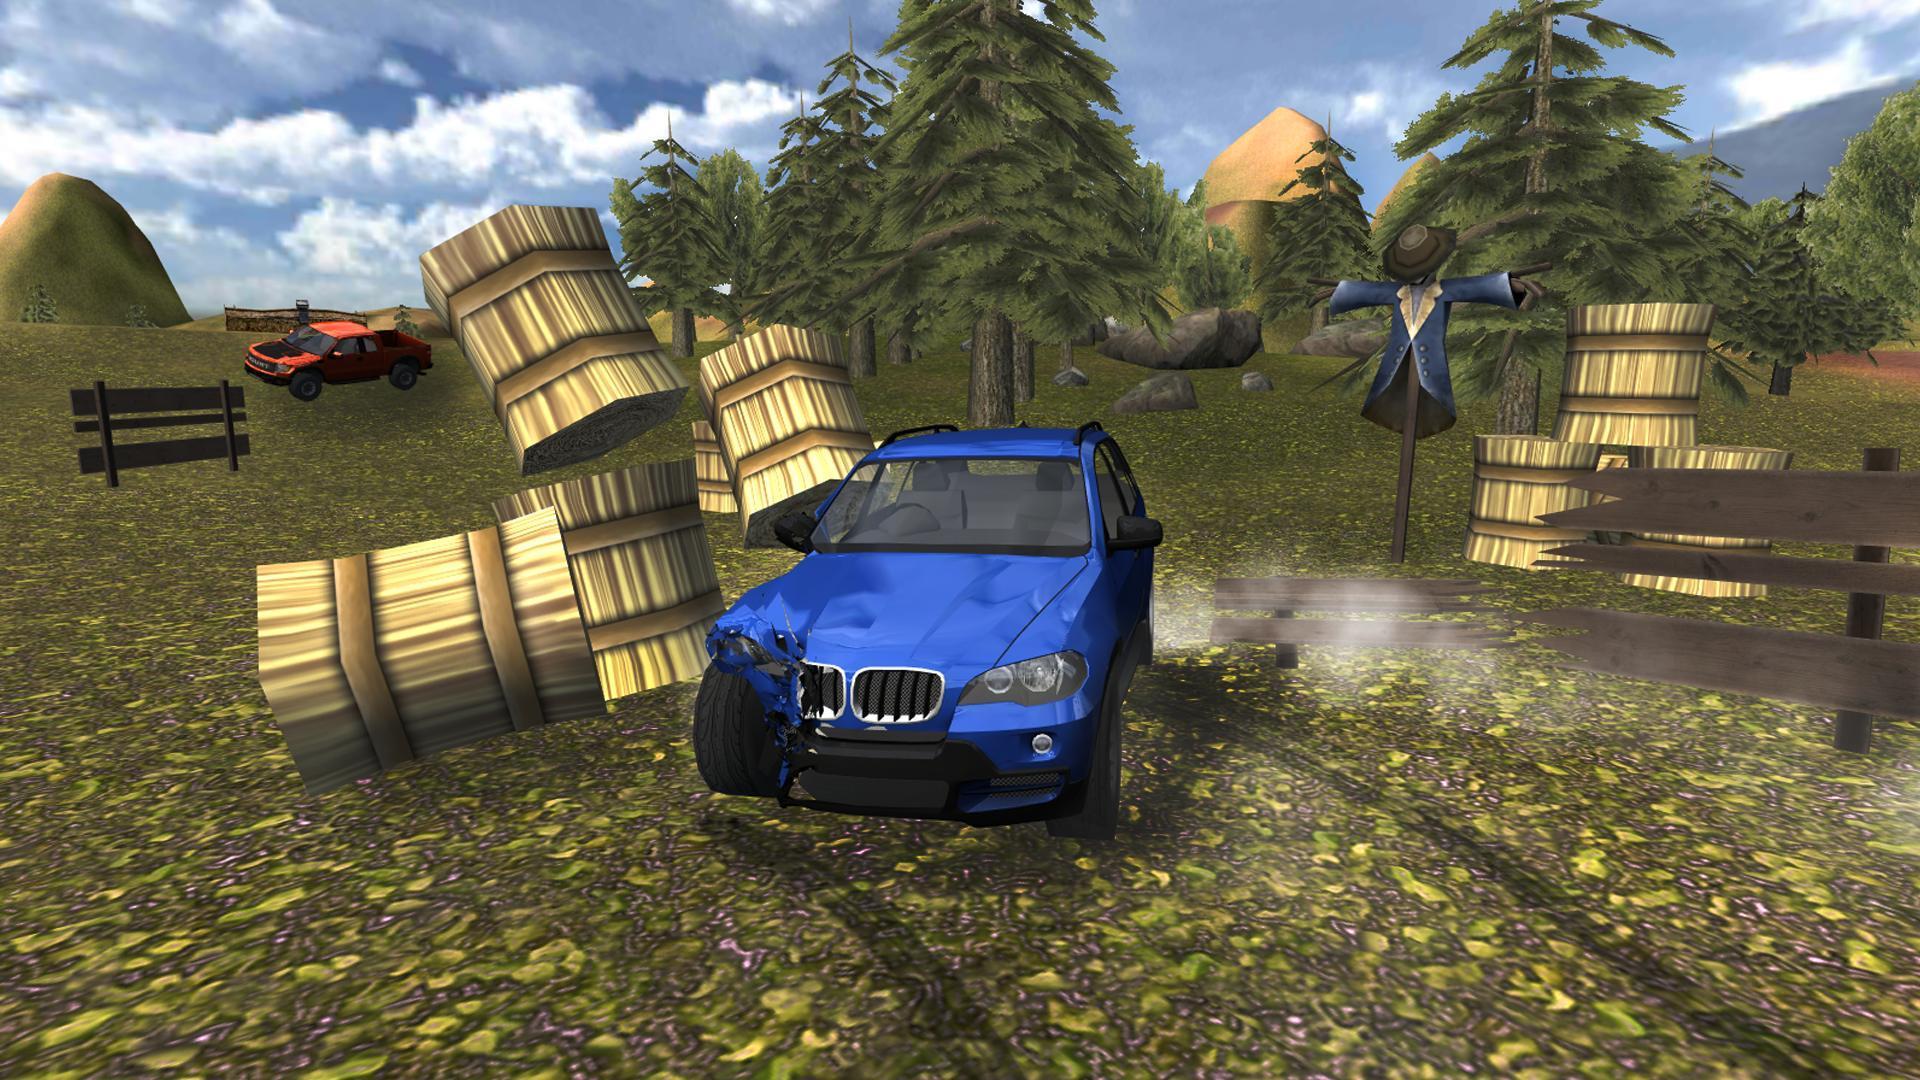 Screenshot 1 of Симулятор вождения внедорожника 4x4 